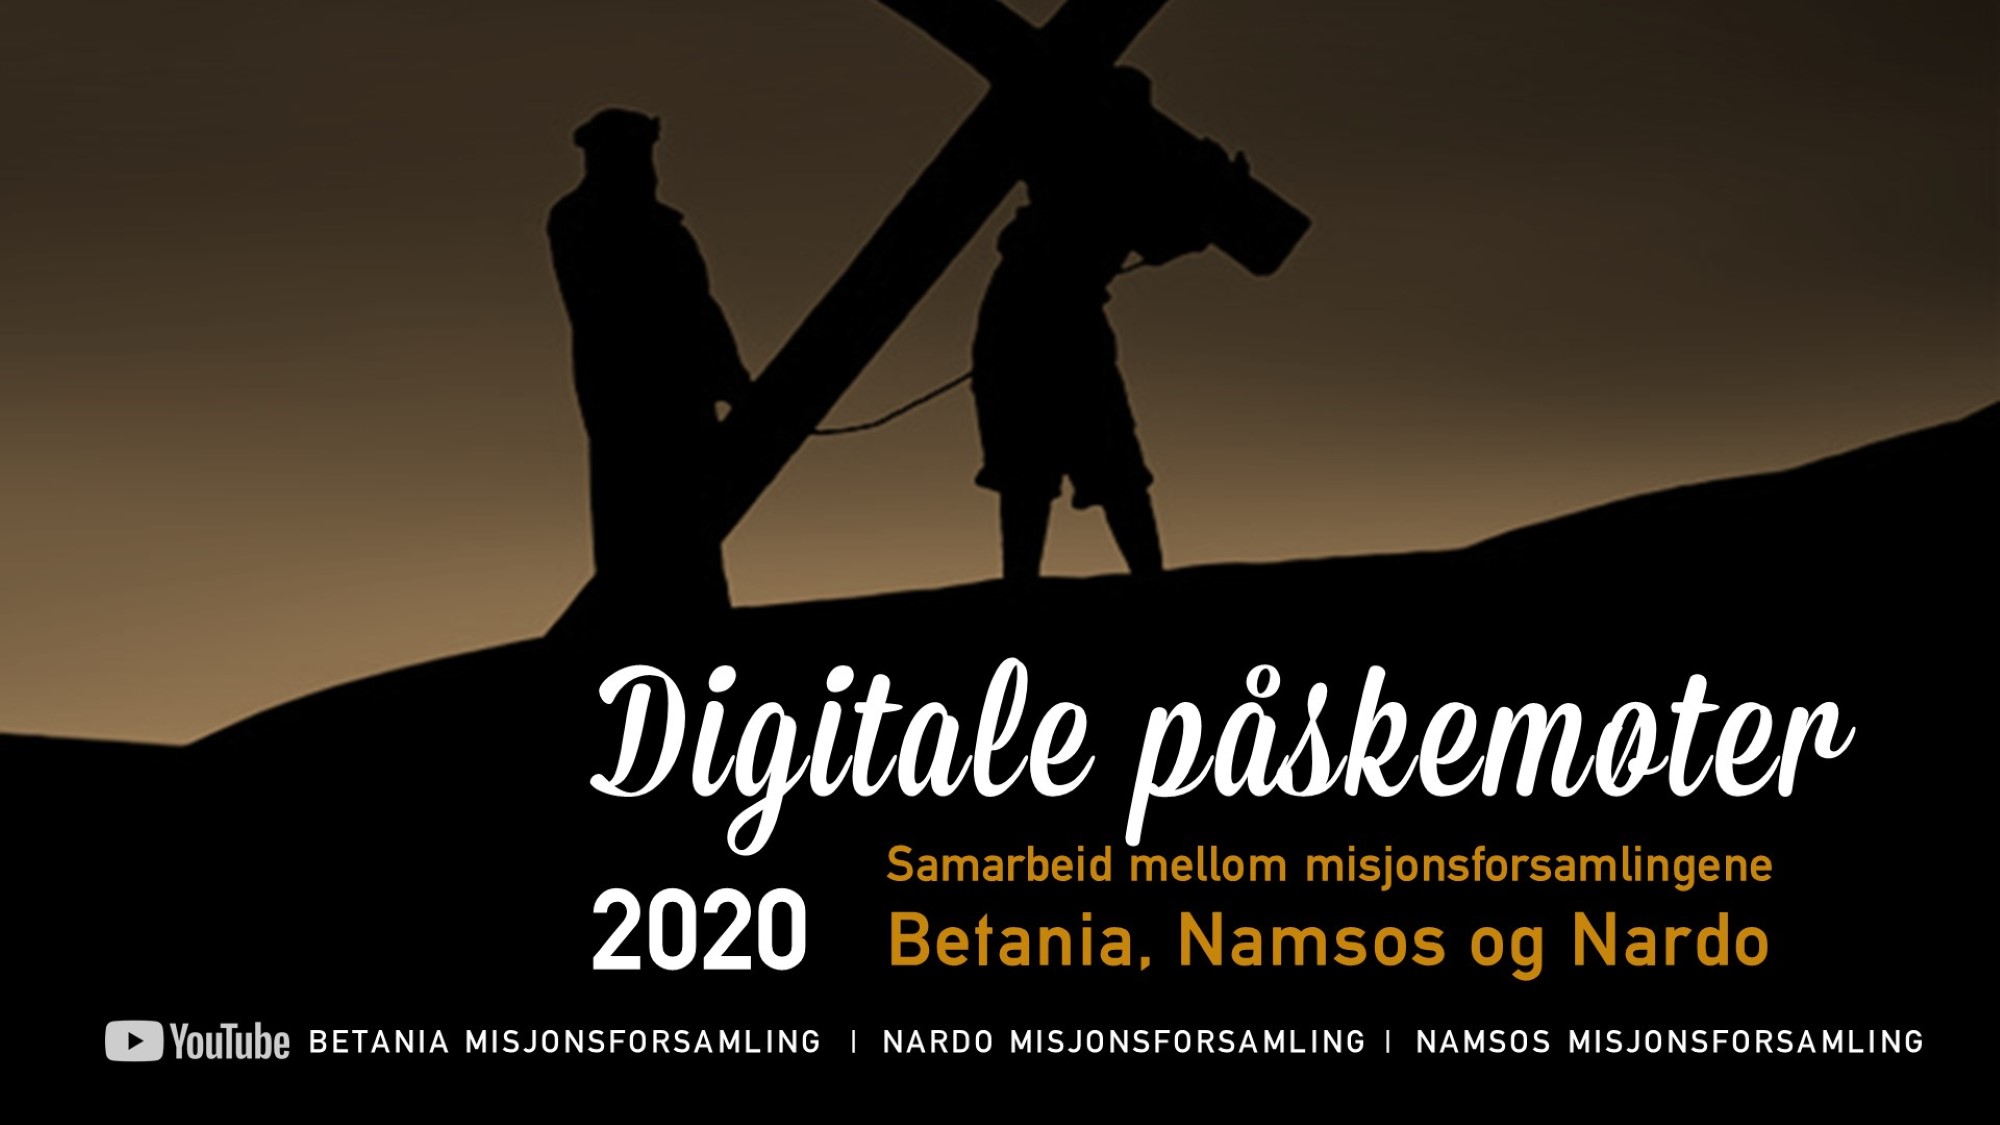 Digitale påskemøter i Midt-Norge 2020